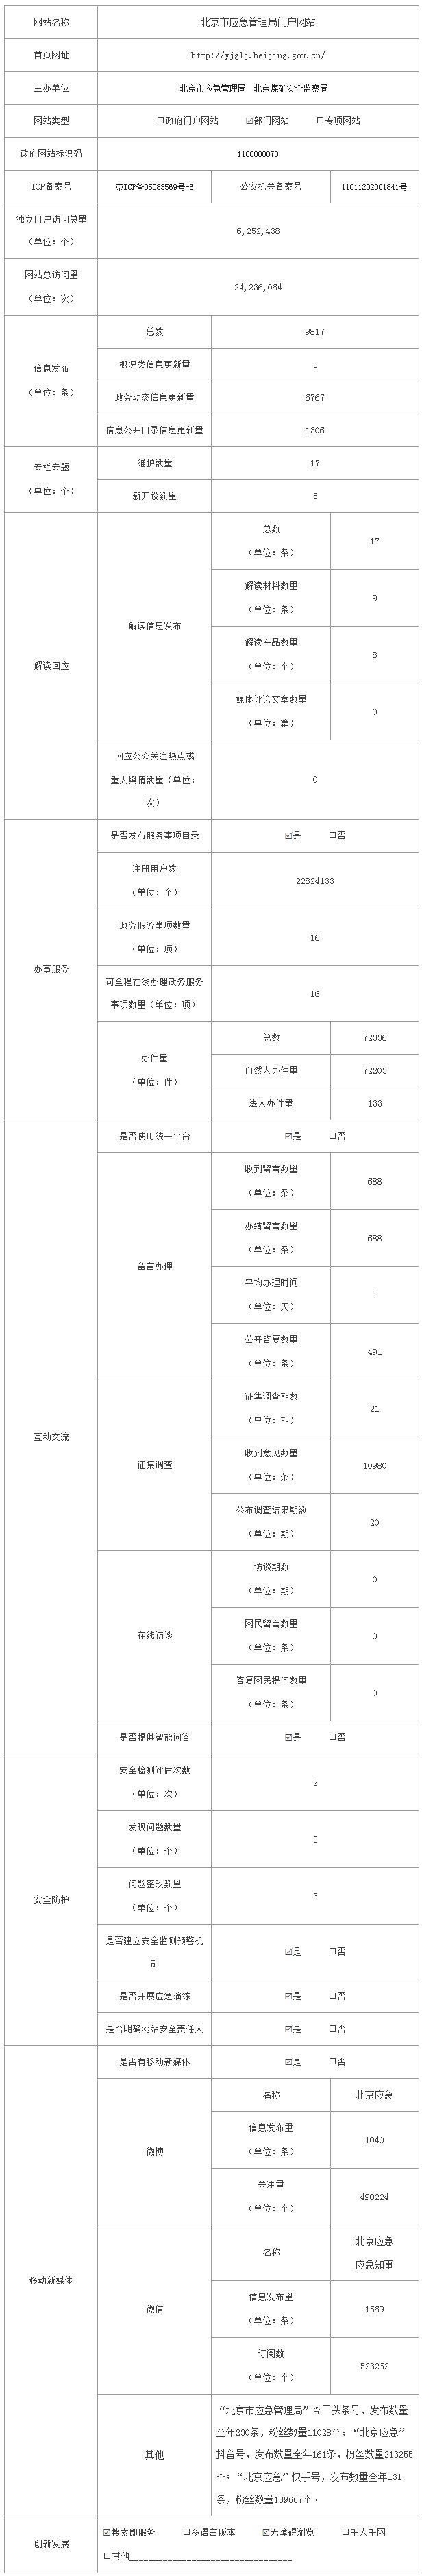 北京市應急管理局2020年政府網站年度工作報表